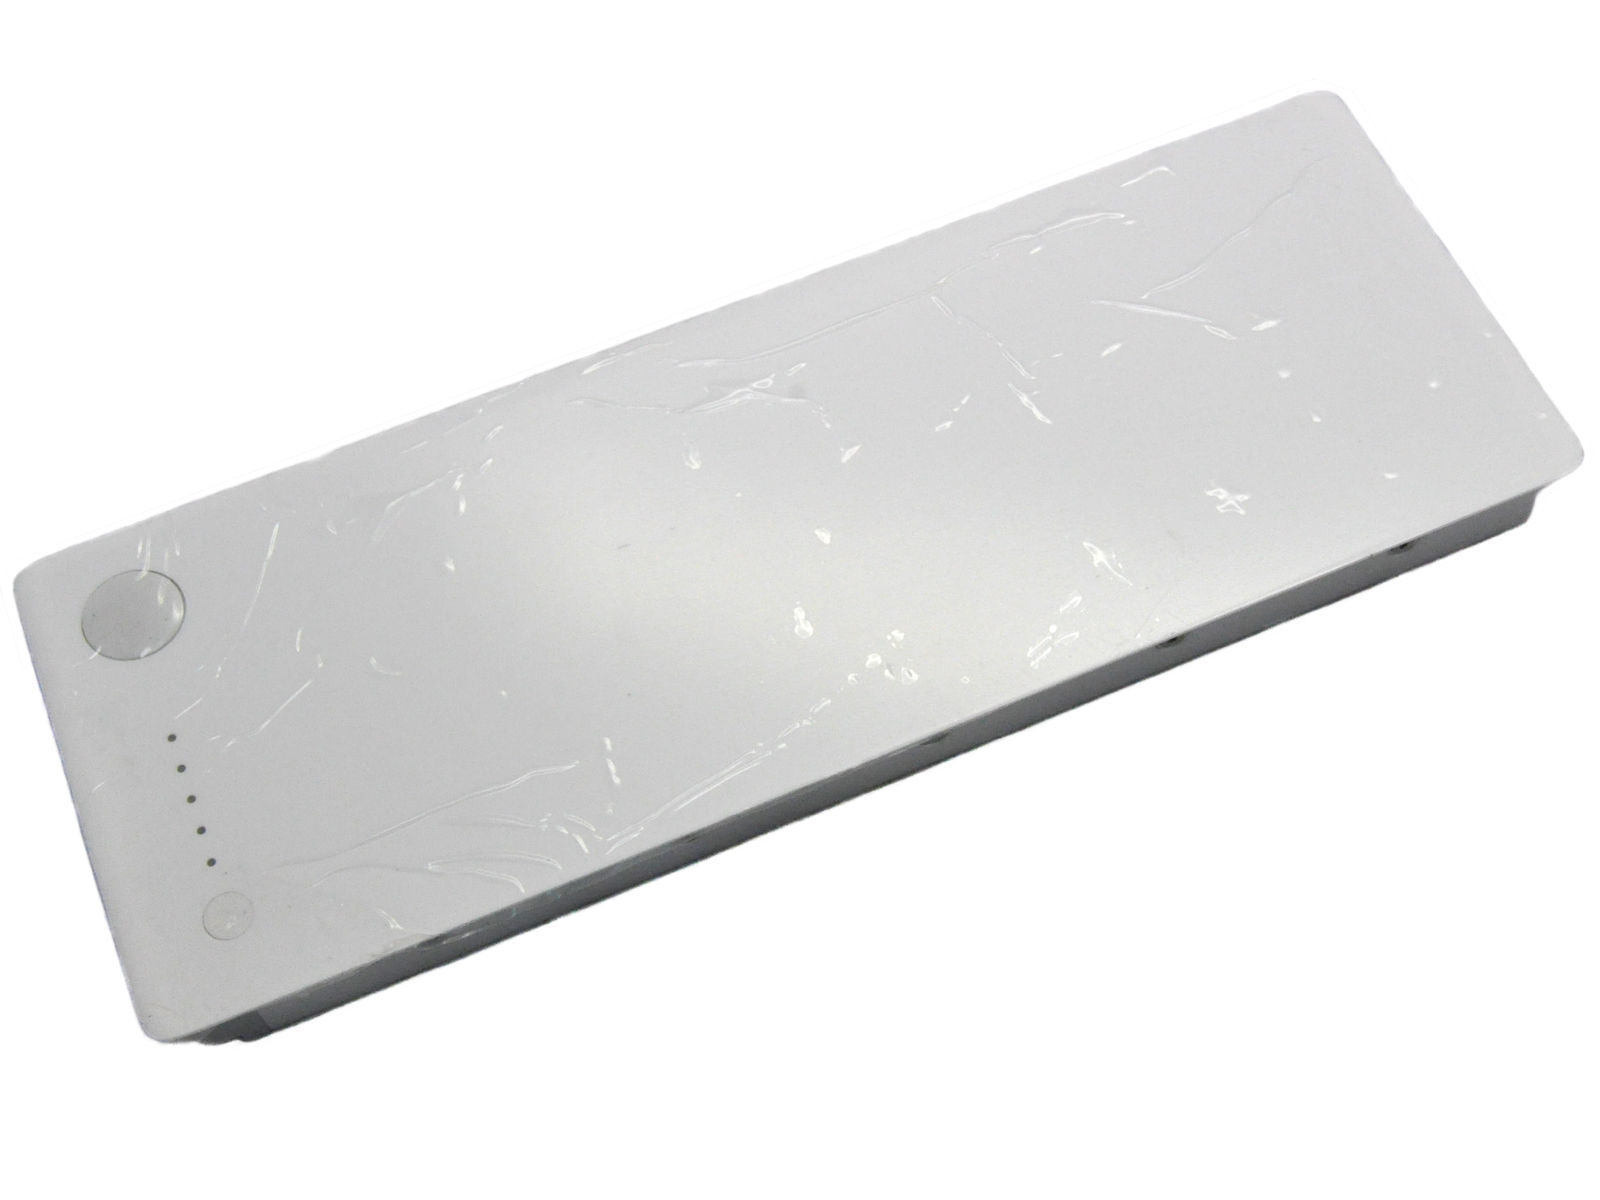 Pin dành cho MacBook 13 A1181 (2008) - White A1185 Capacity 10.8V/55WH